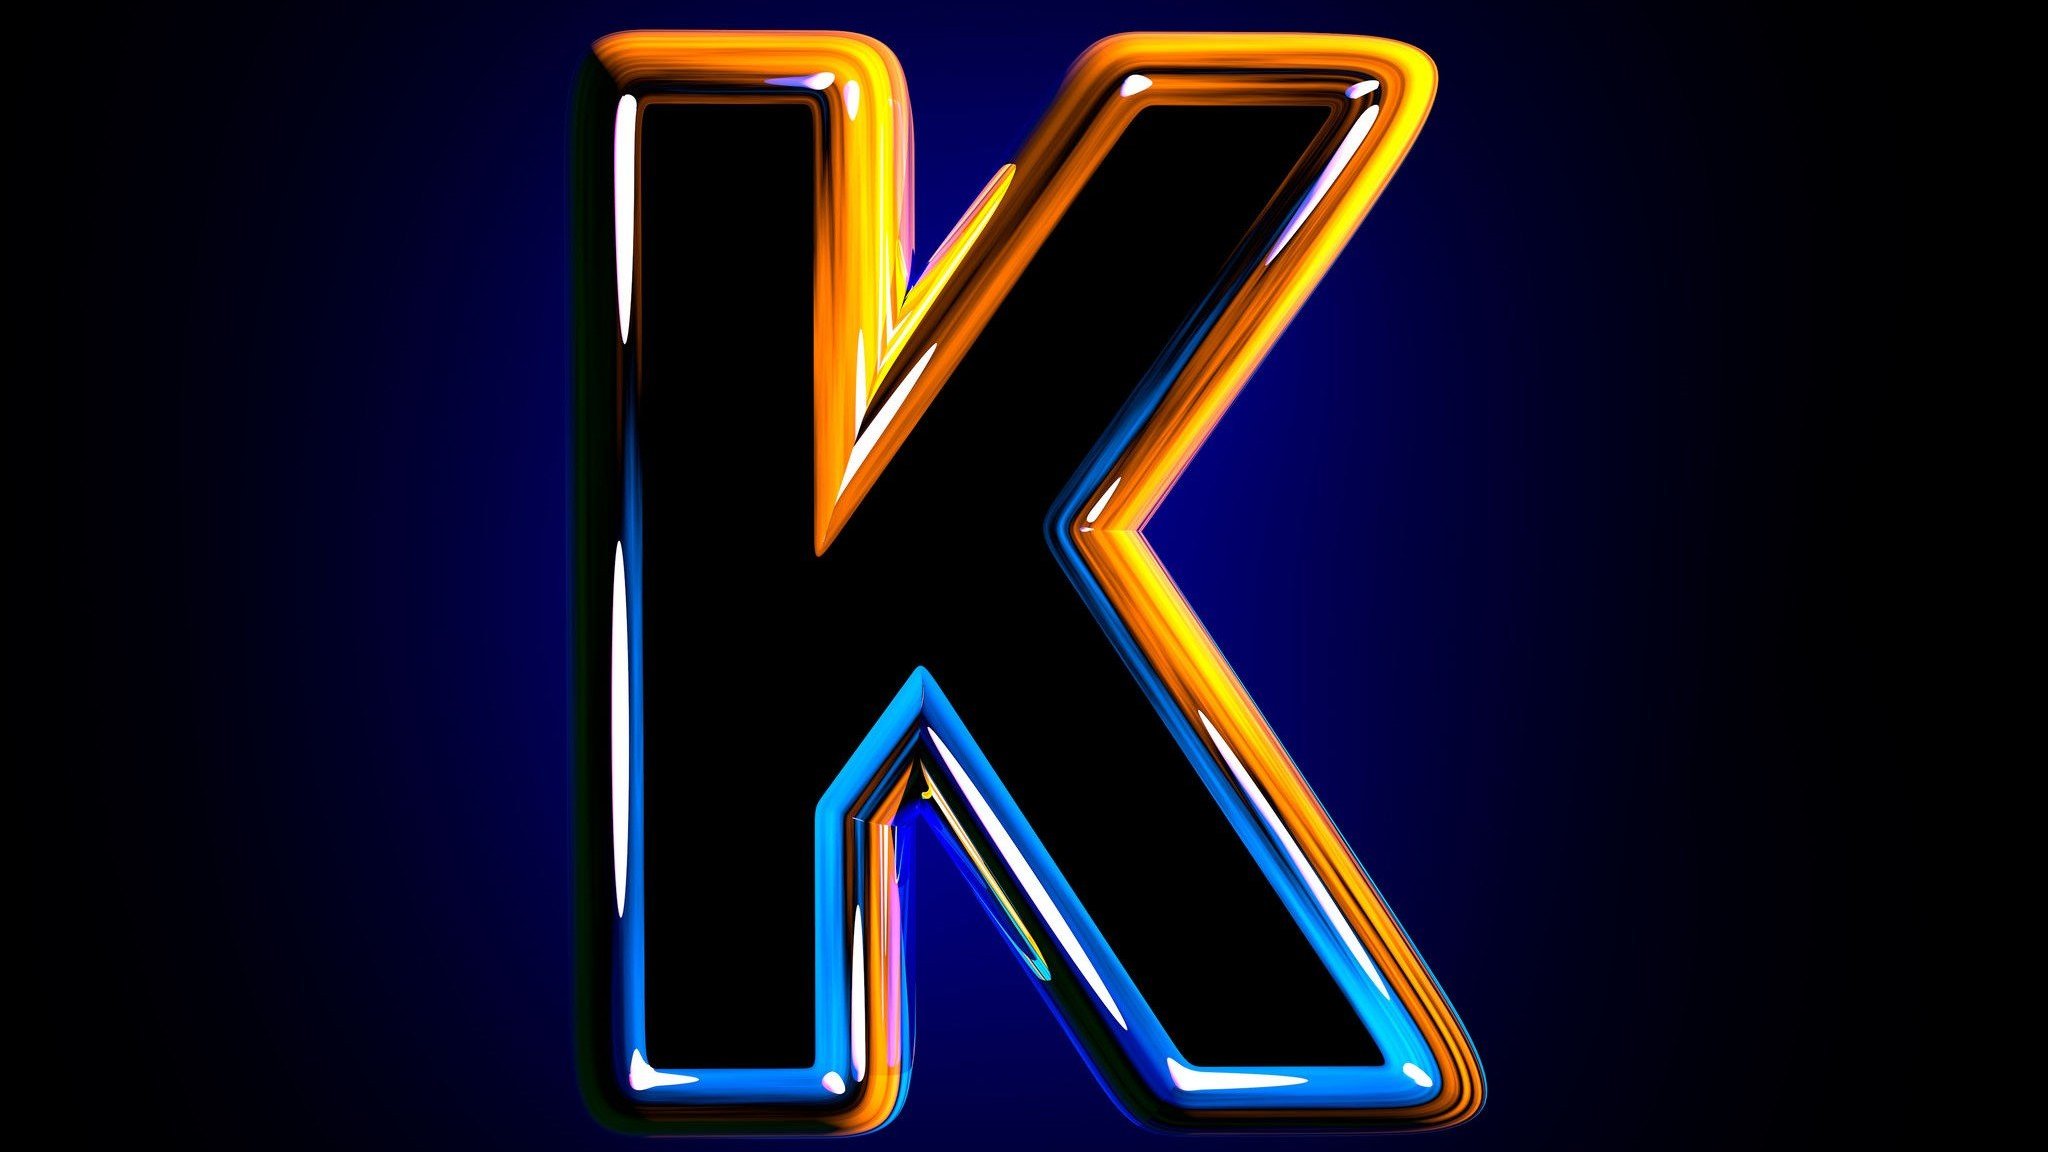 Letra K desenhada em fundo preto, com borda colorida em laranja e azul.